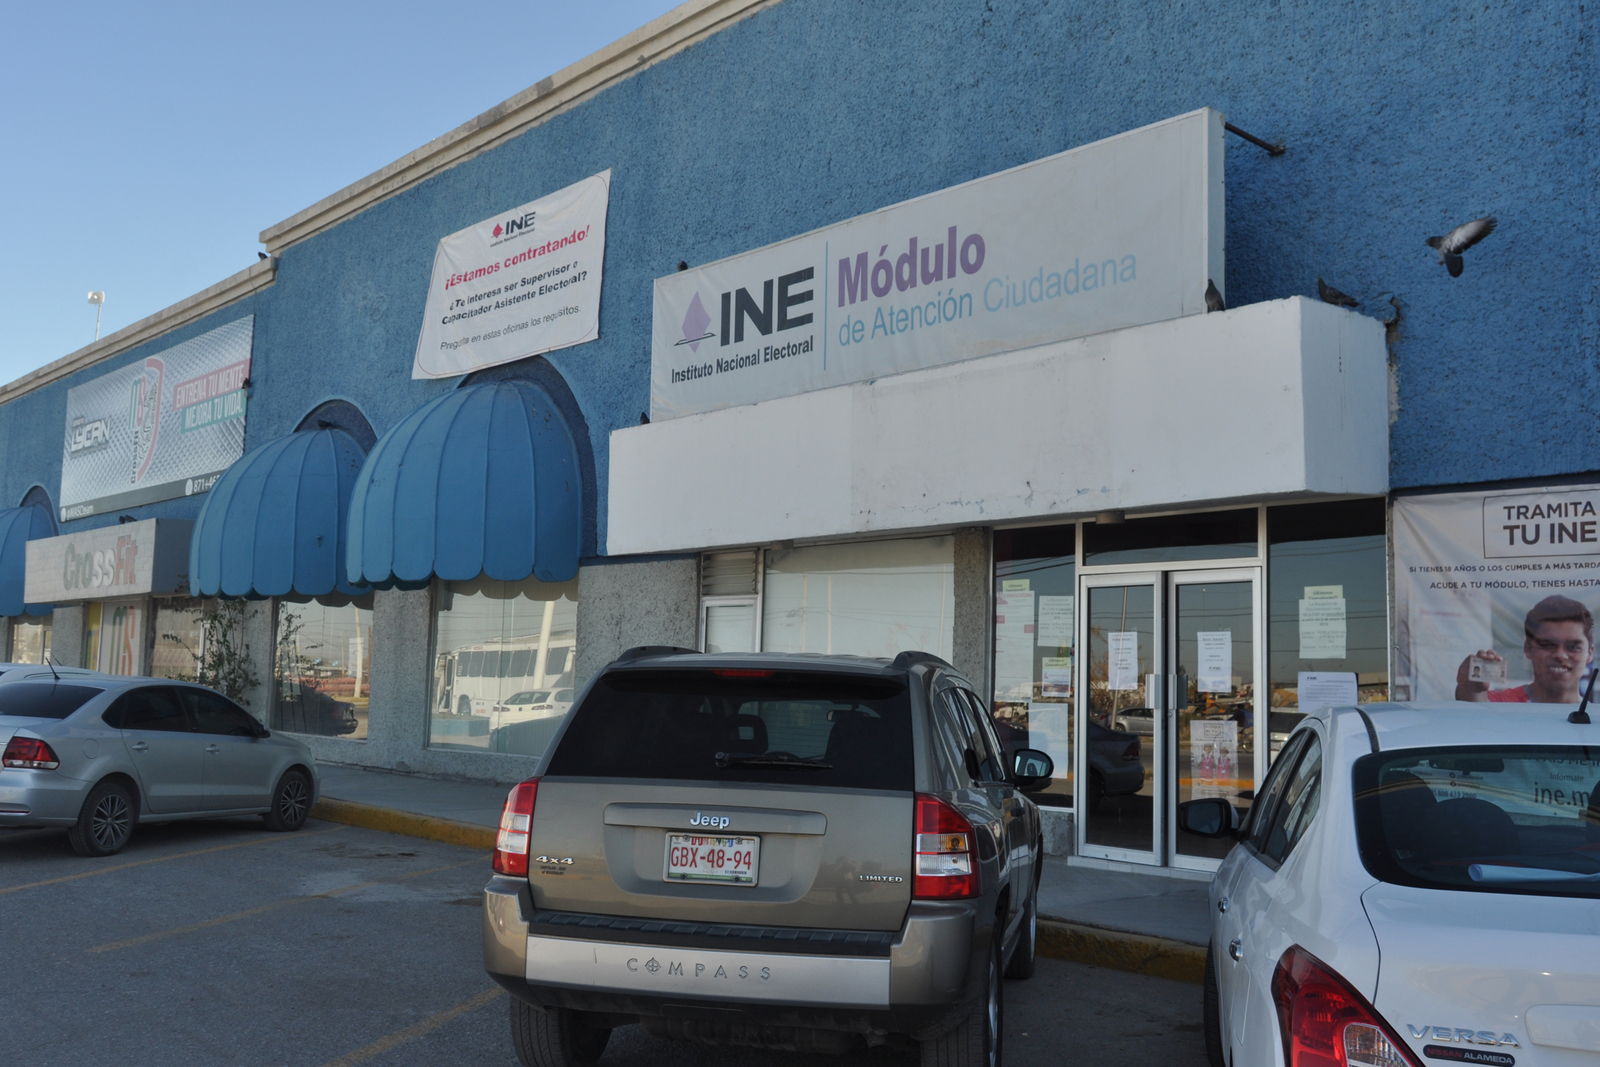 Concurso. El Consejo Infantil y Juvenil se instalará en la Junta Distrital 06 ubicado en Plaza Jumbo de Torreón. (ARCHIVO)